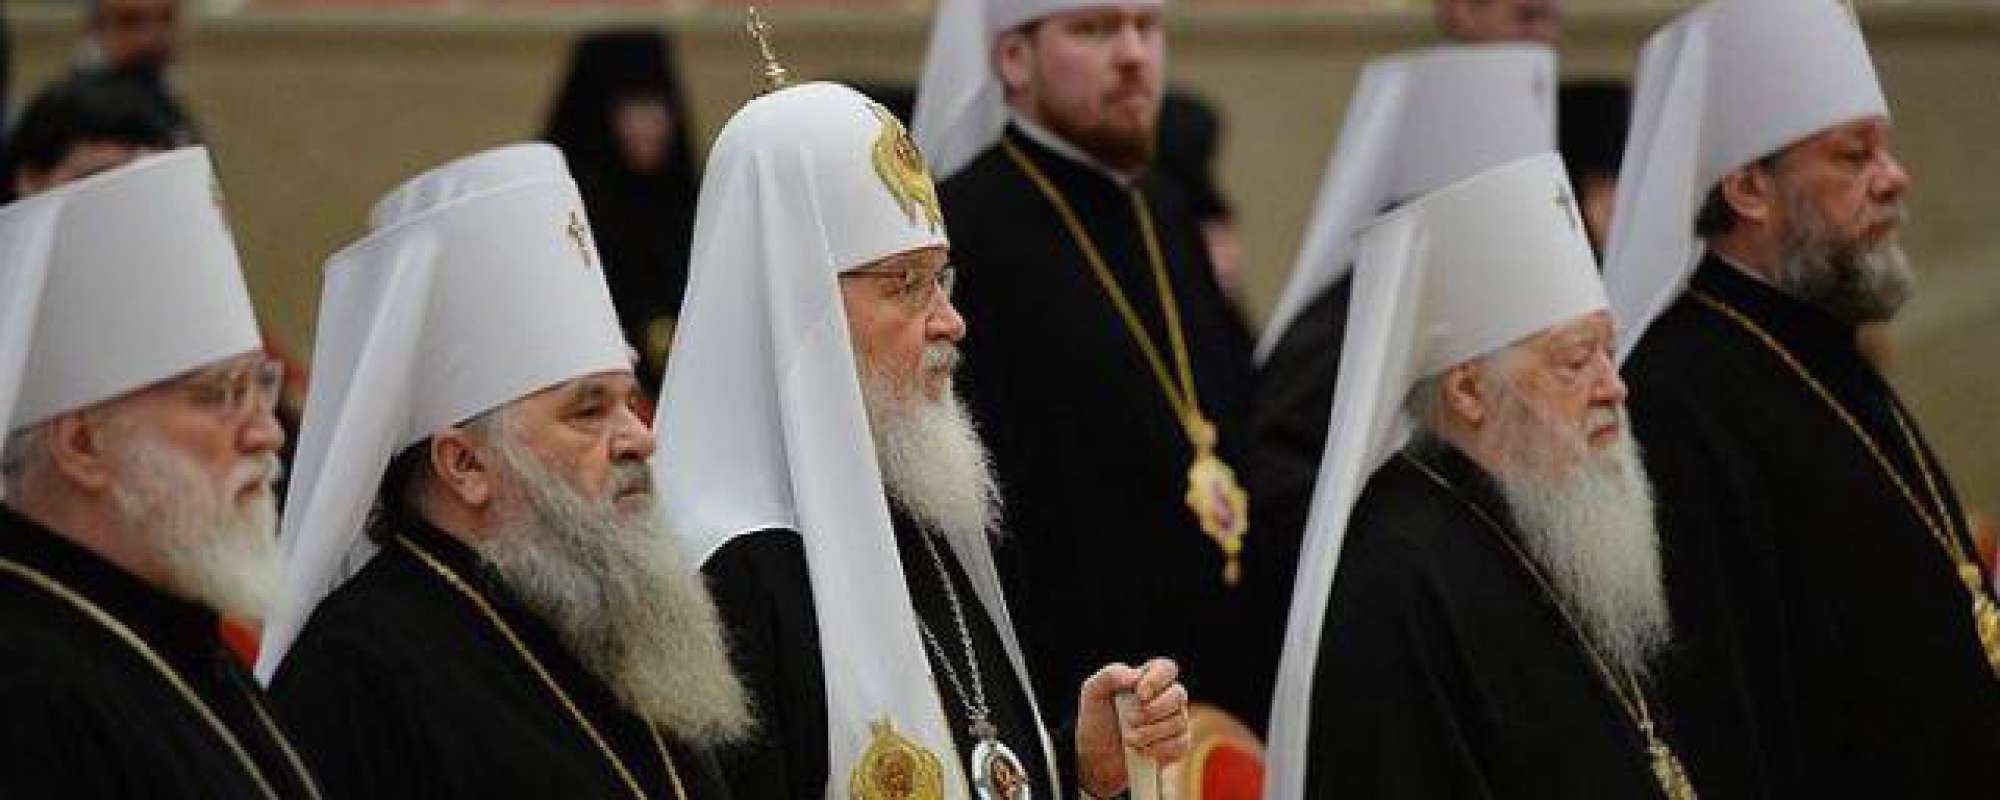 РПЦ составляет список профессий, несовместимых со священством